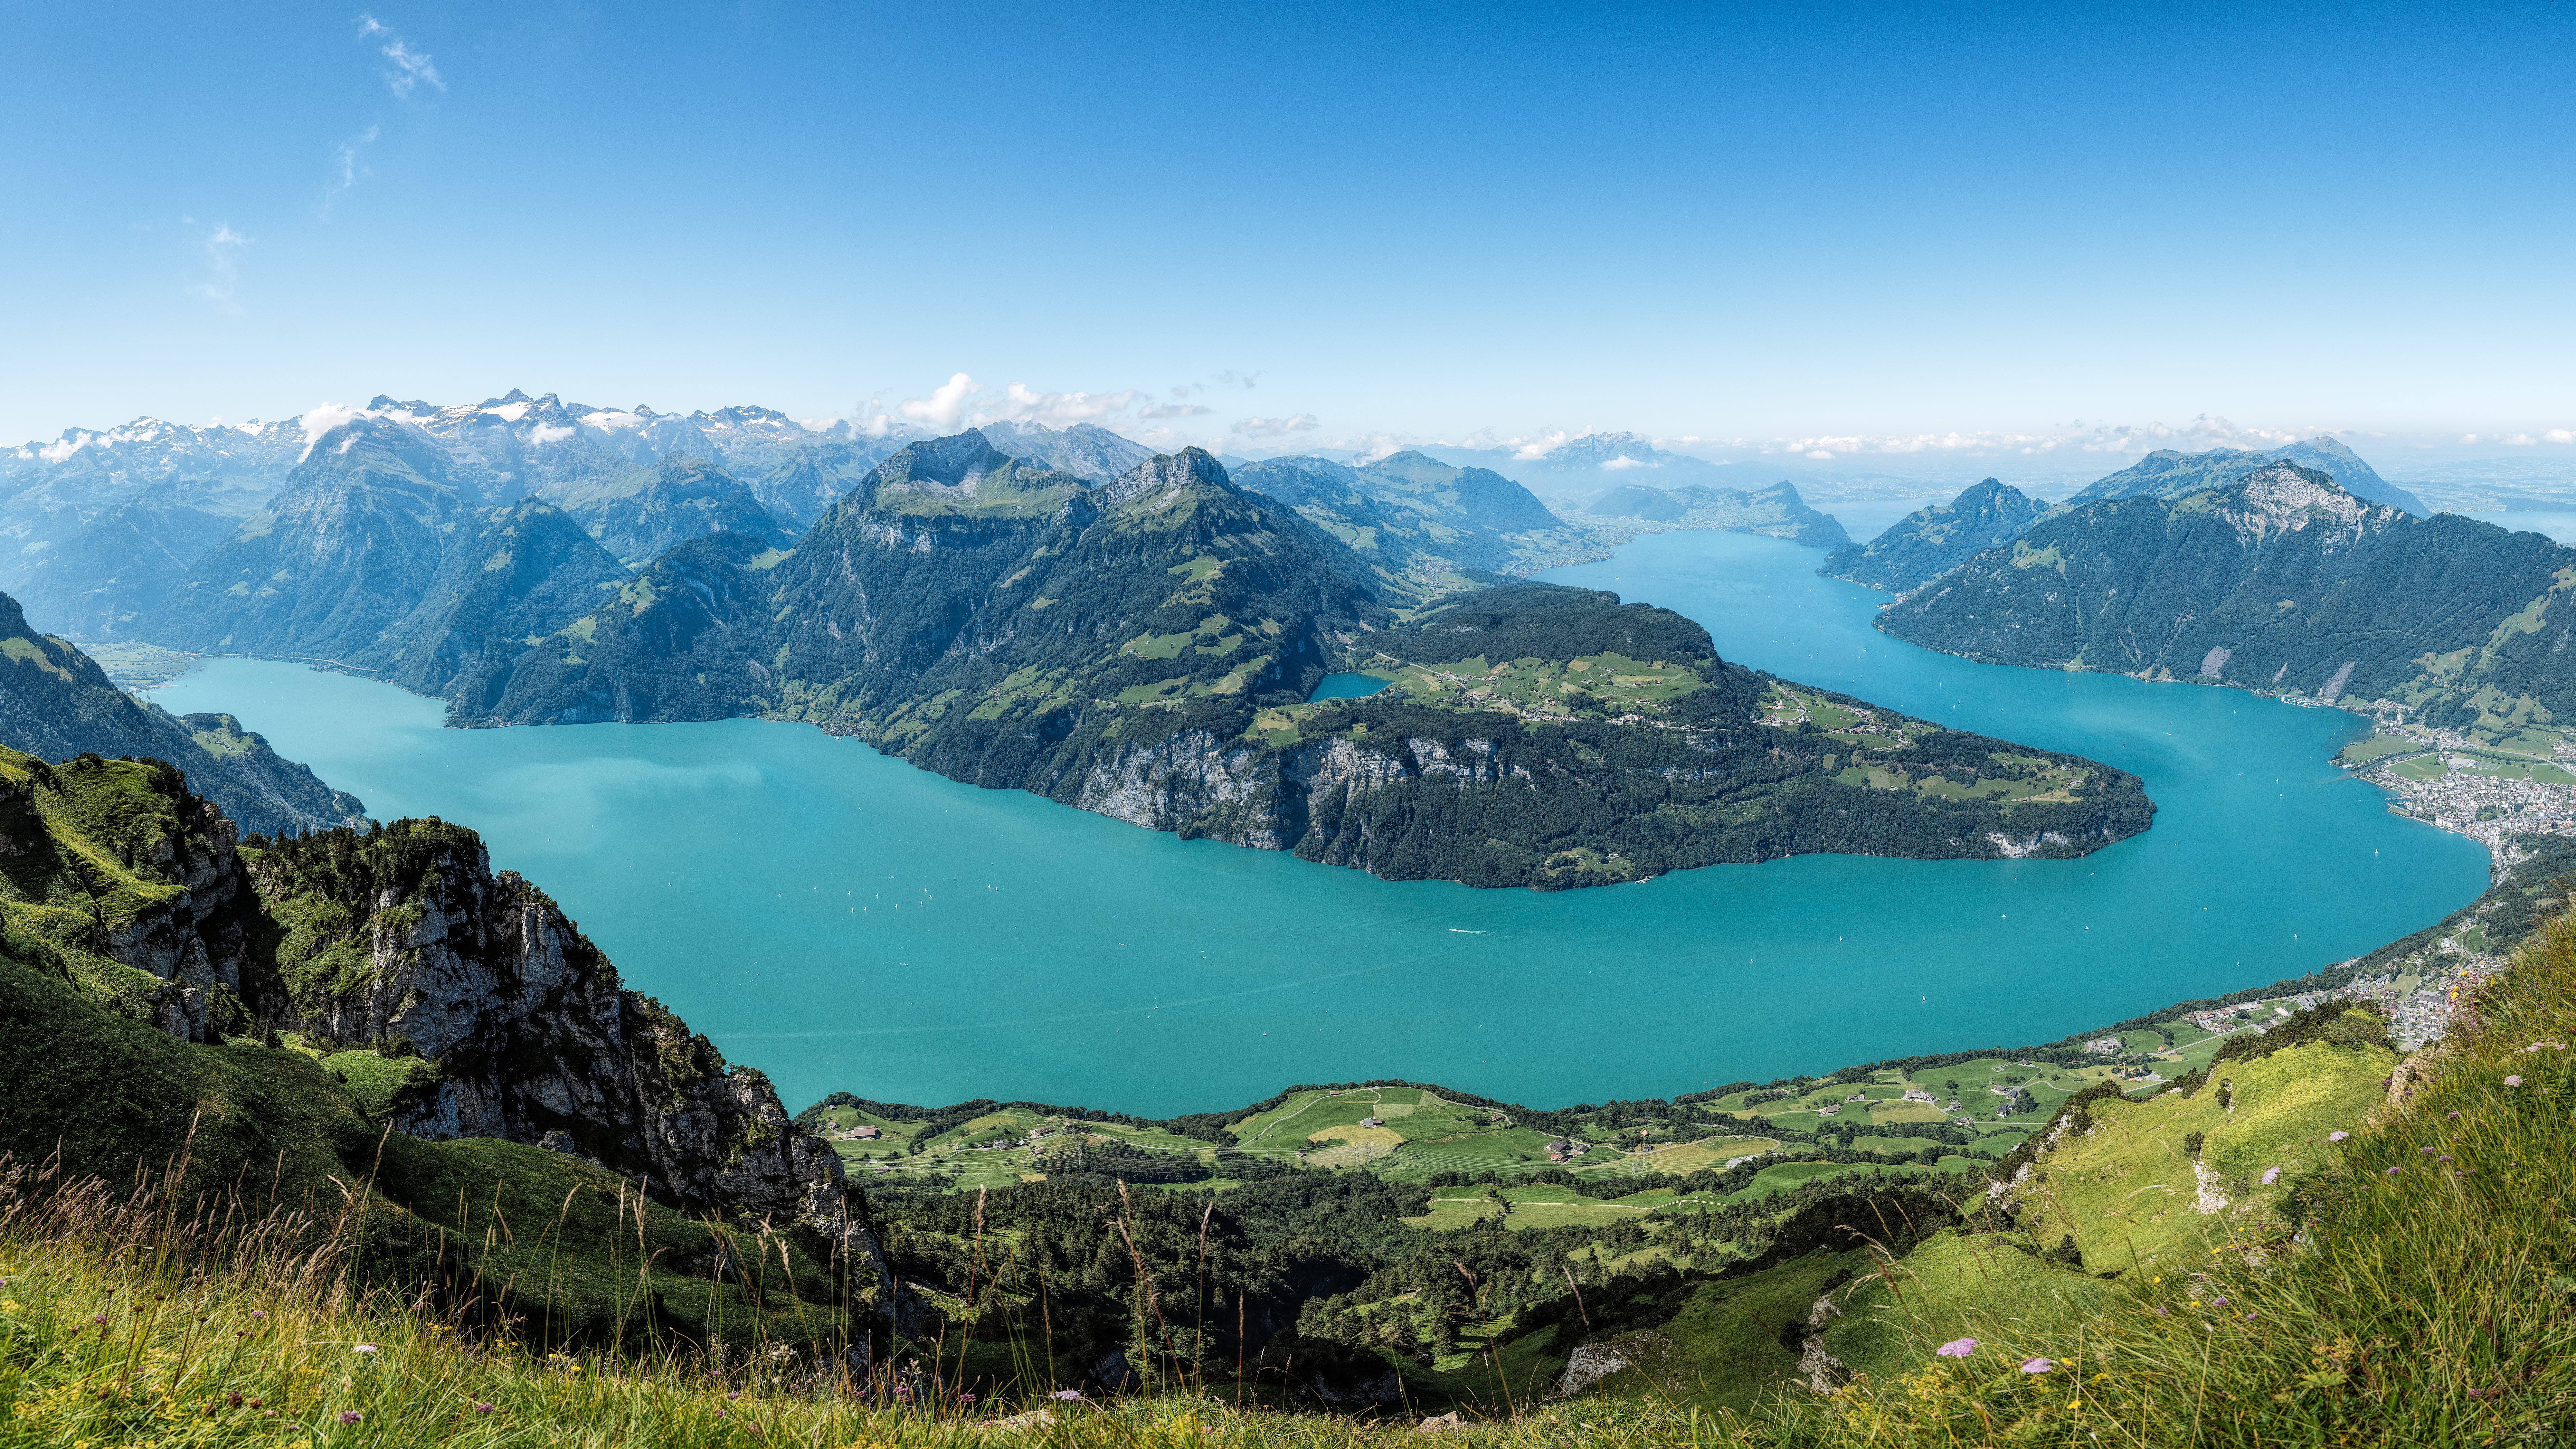 Panoramablick auf den Vierwaldstättersee, umgeben von Bergen, mit Wäldern und Wiesen, Top Sehenswürdigkeit in der Schweiz